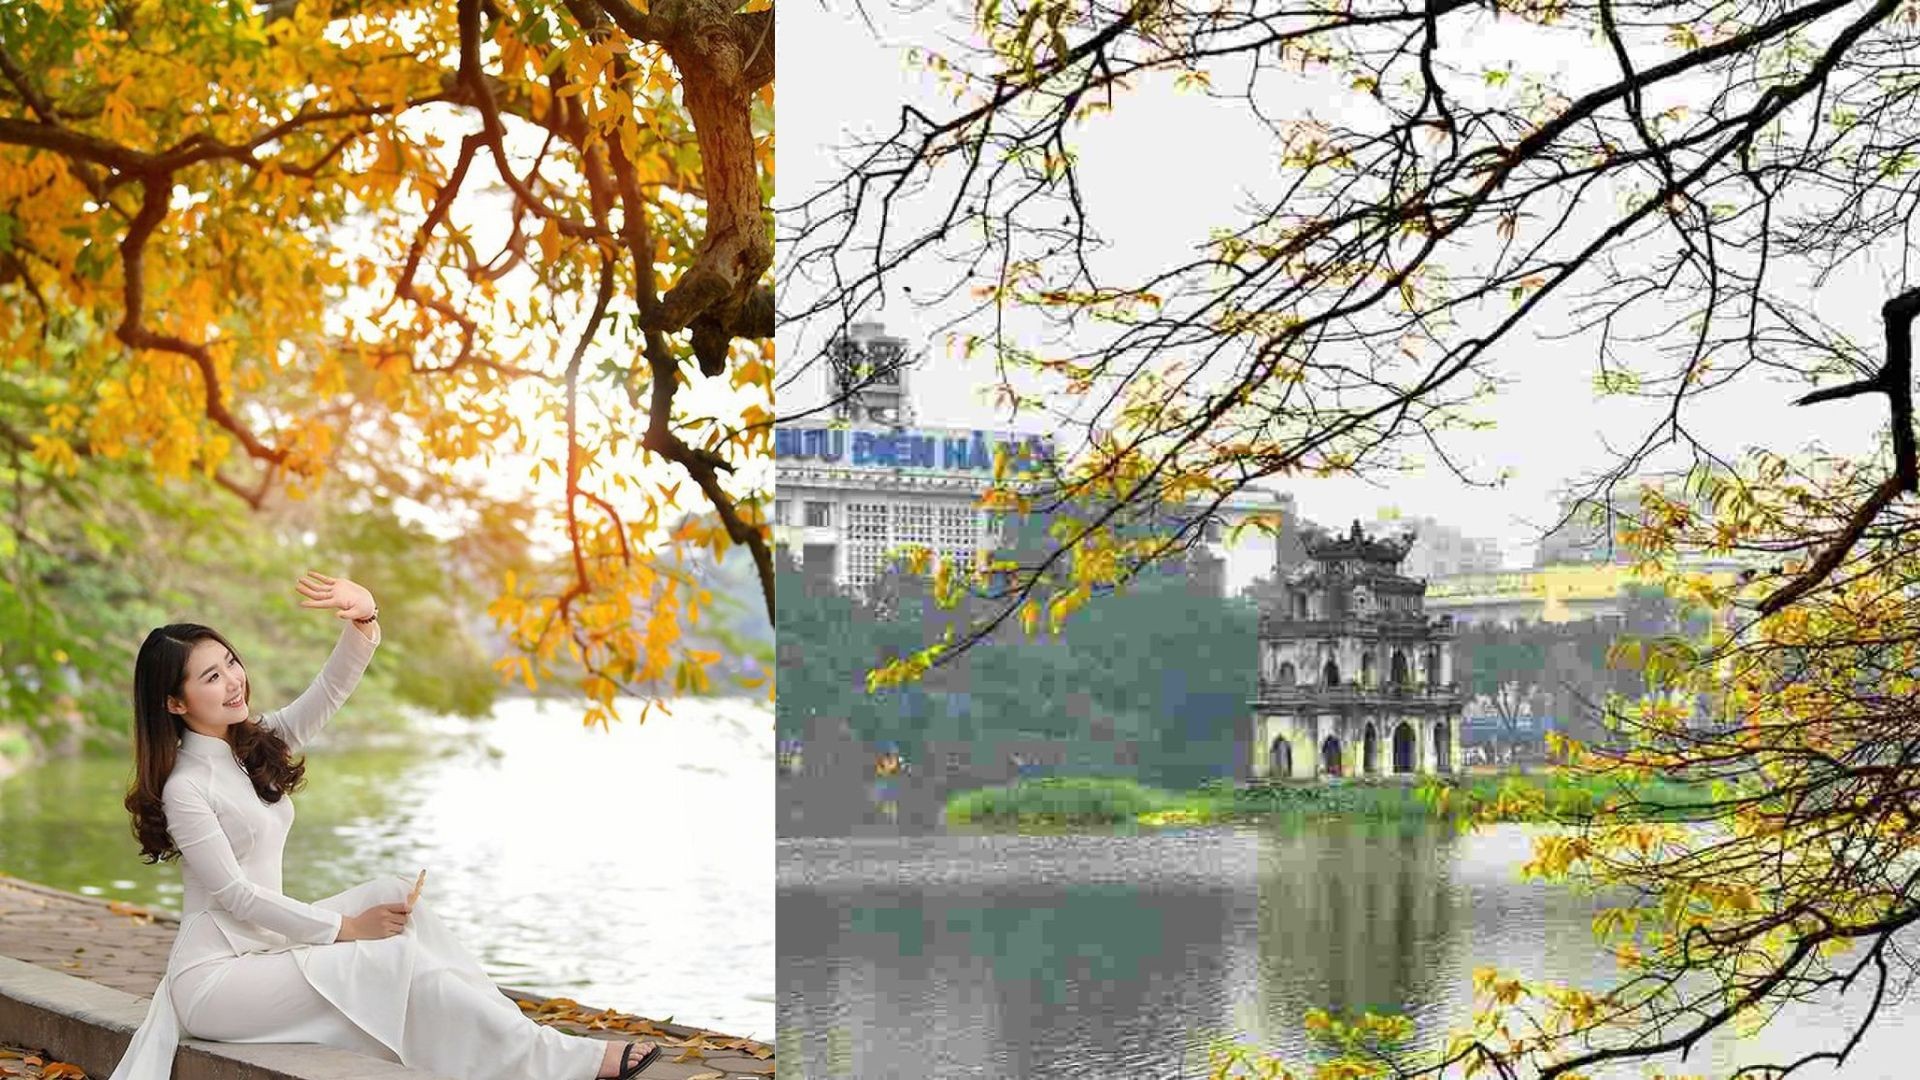 Hồ Gươm đứng đầu địa điểm chụp ảnh đẹp nhất ở Hà Nội vào mùa thu